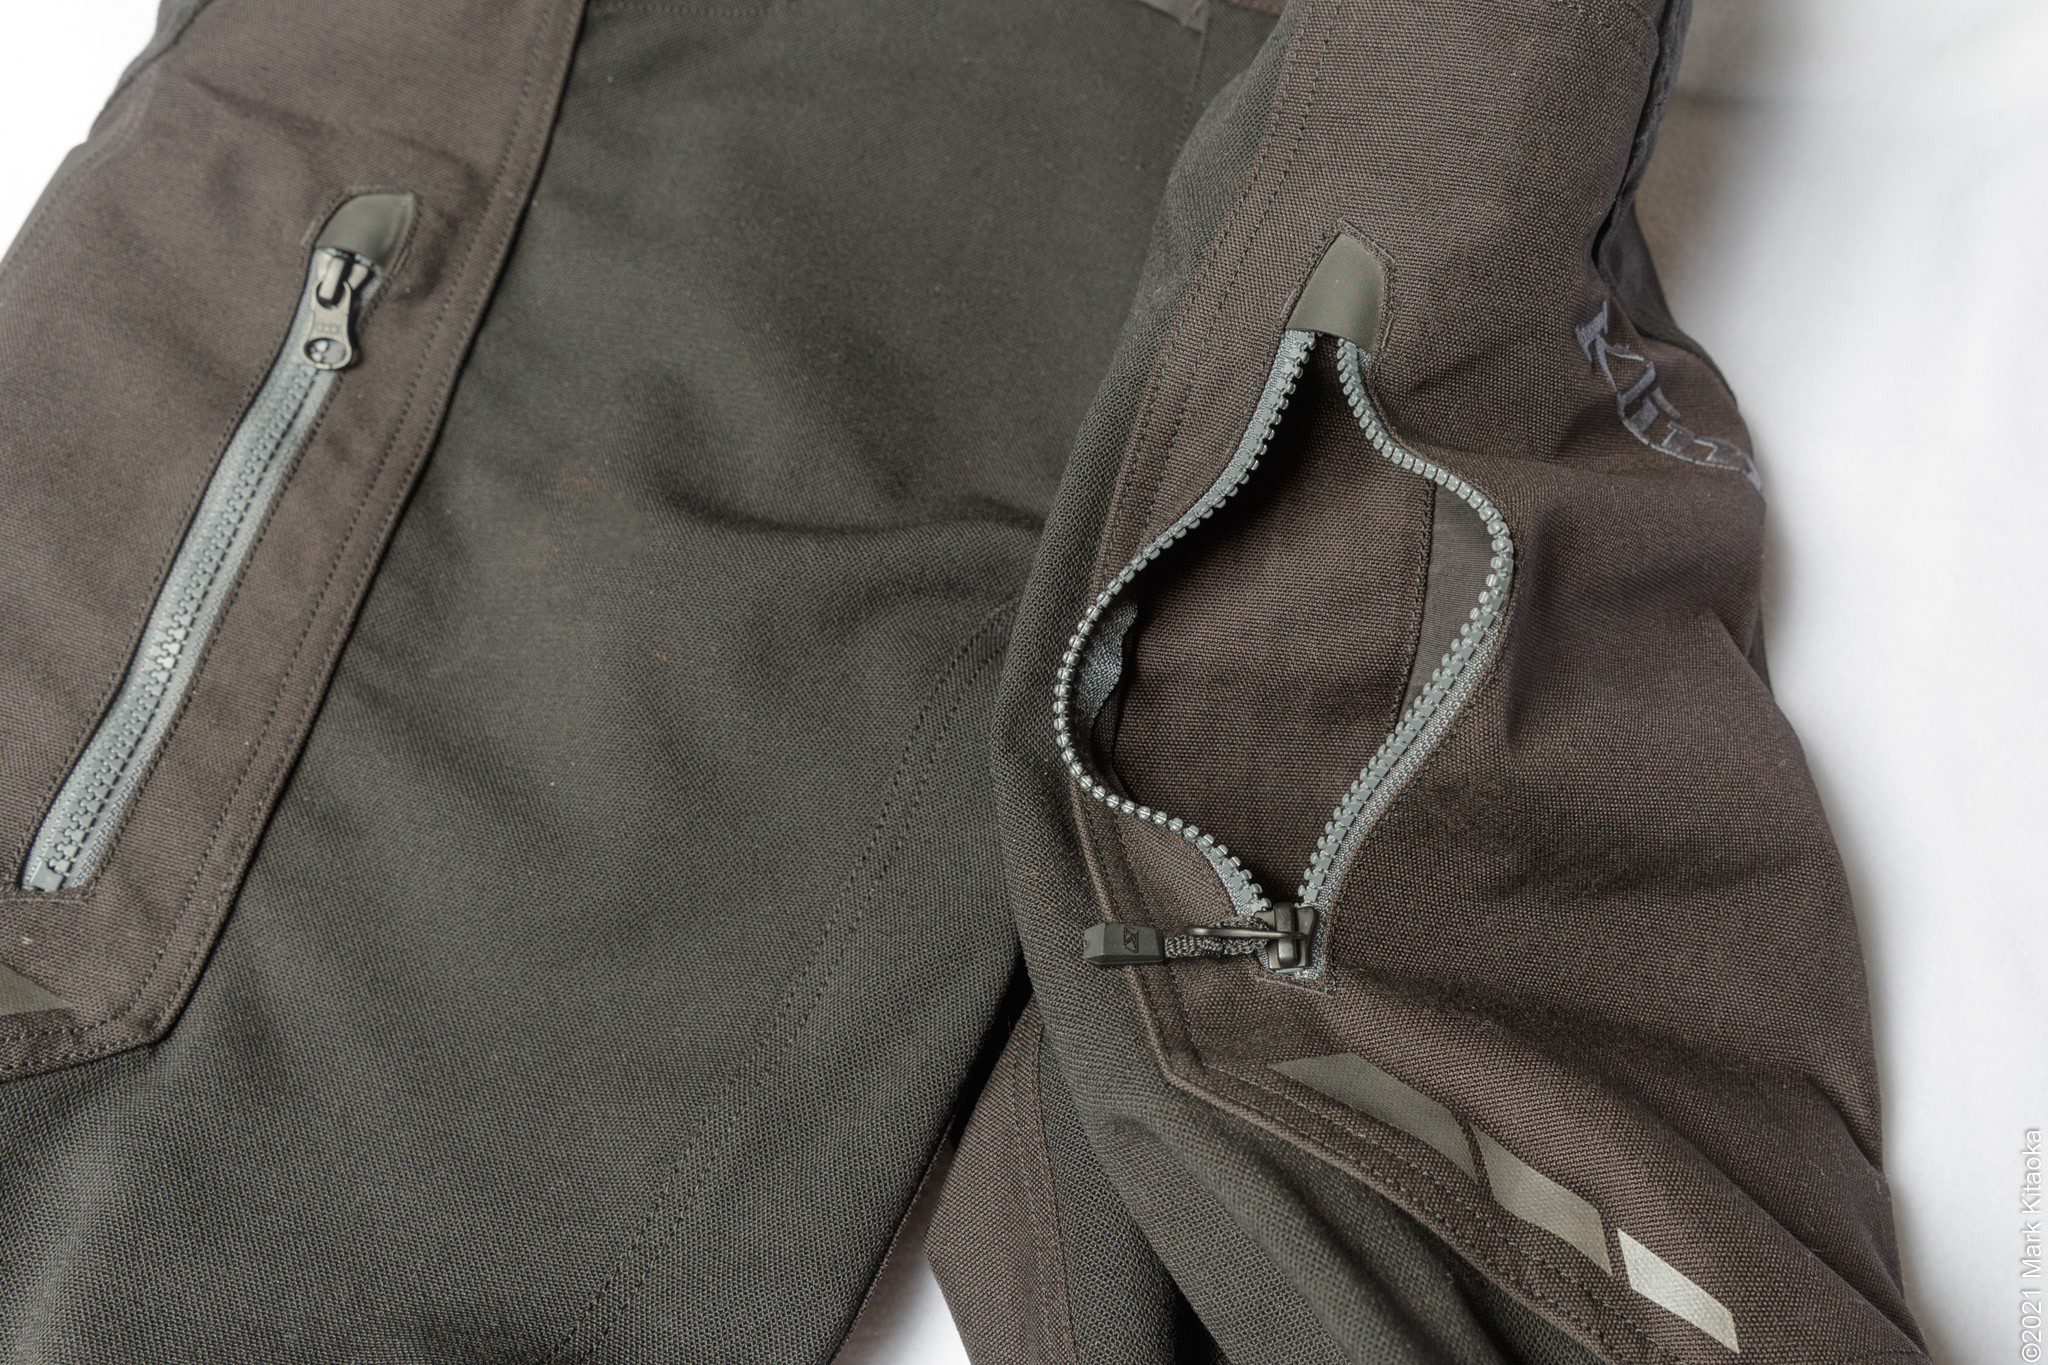 Closeup showing open upper zippered thigh pockets